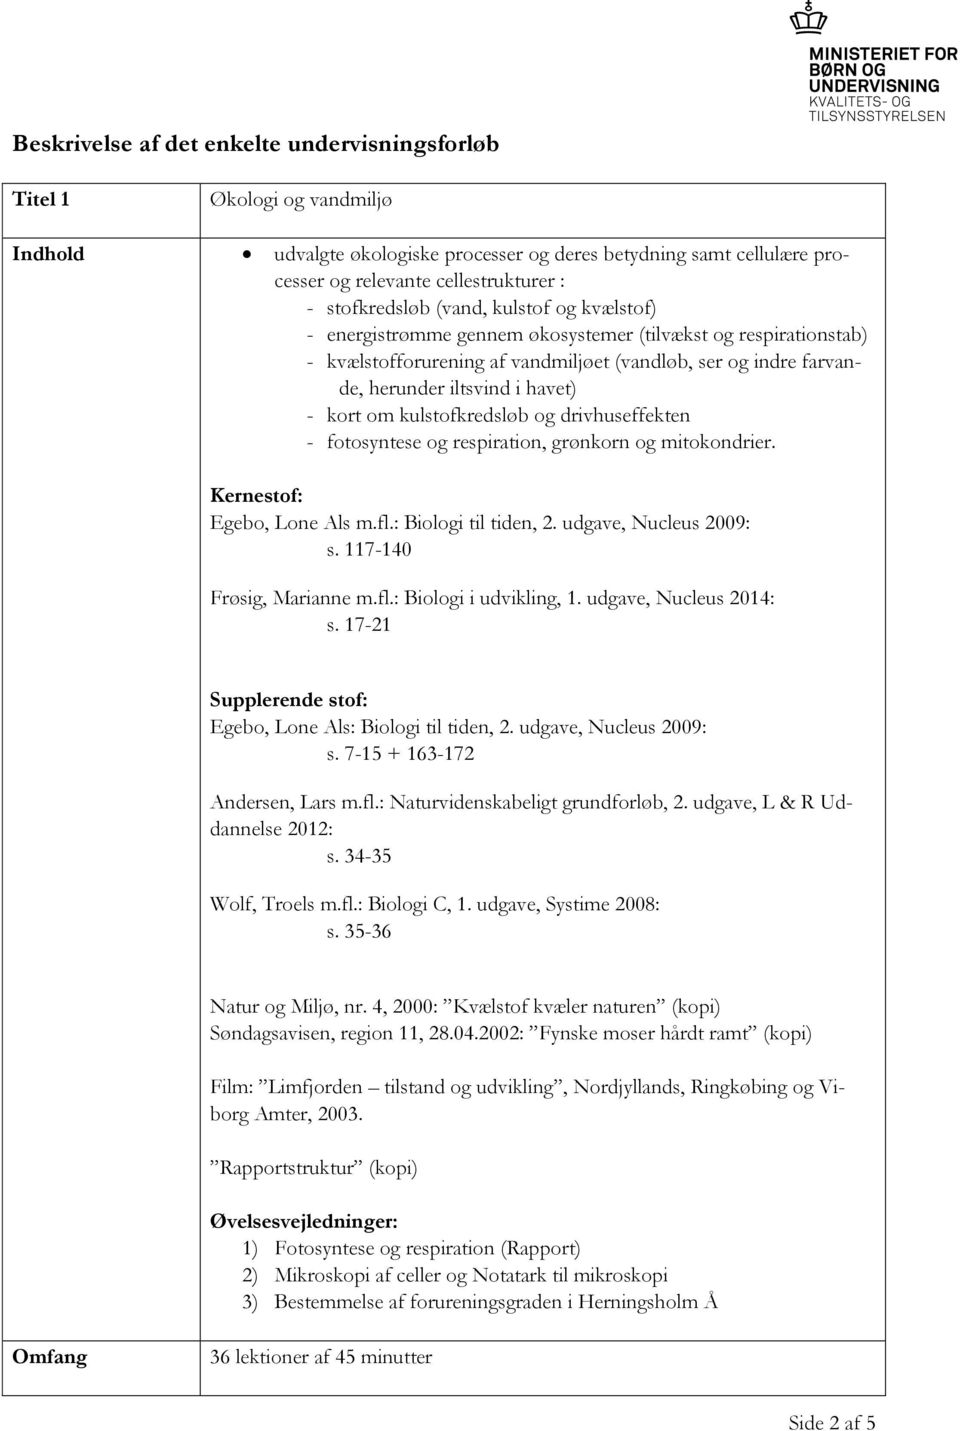 drivhuseffekten - fotosyntese og respiration, grønkorn og mitokondrier. s. 117-140 Frøsig, Marianne m.fl.: Biologi i udvikling, 1. udgave, Nucleus 2014: s. 17-21 Egebo, Lone Als: Biologi til tiden, 2.